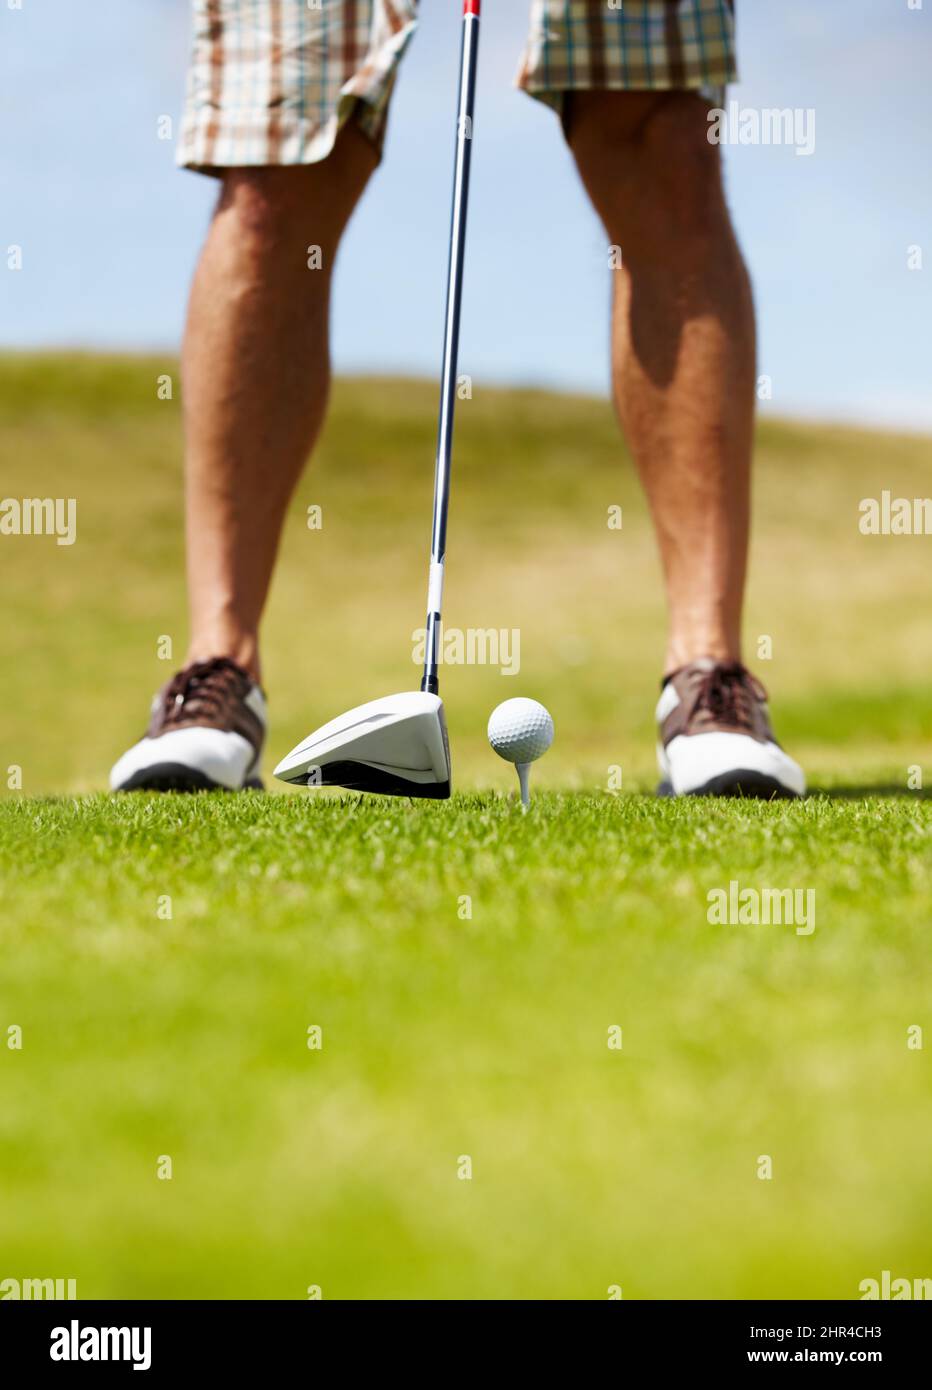 Dieser Club sollte den Trick tun.... Zugeschnittenes Bild eines Golfspielers, der kurz vor dem Golfball auf dem Fairway steht. Stockfoto